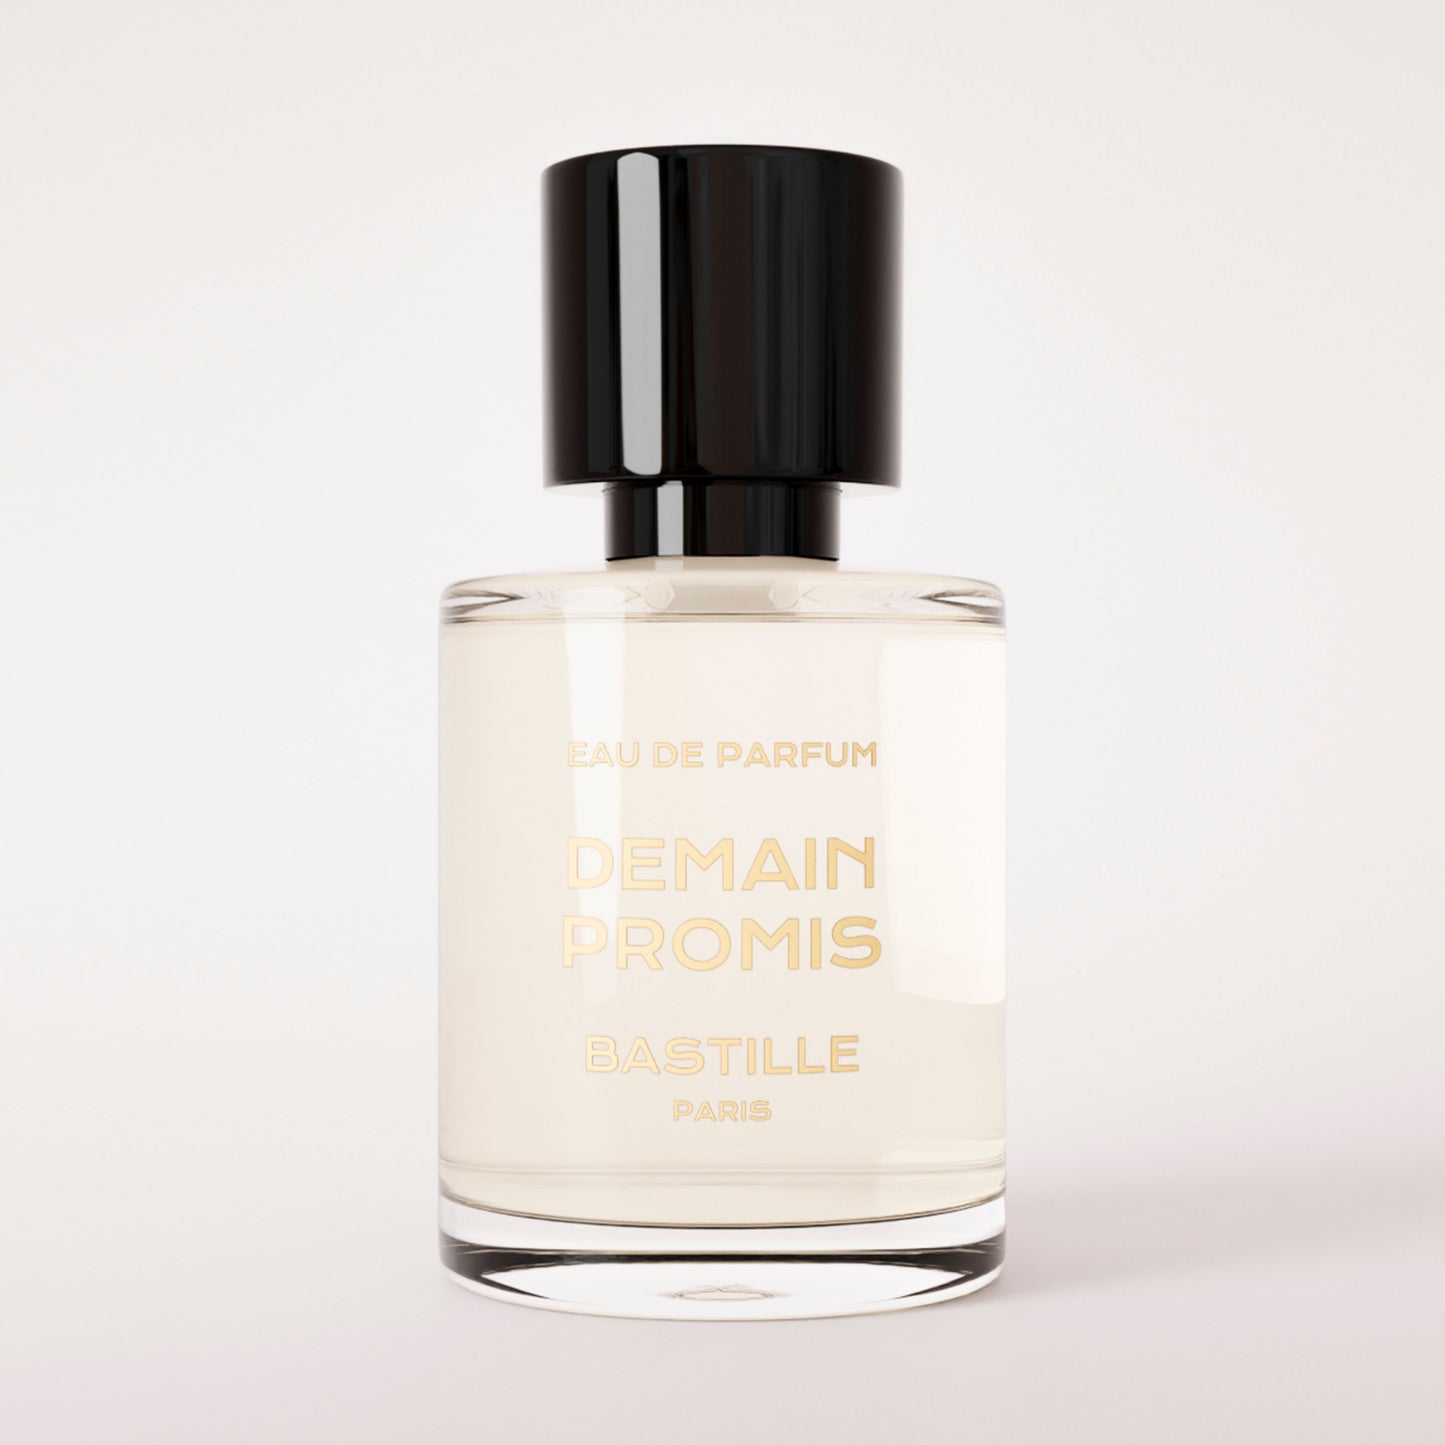 DEMAIN PROMIS Eau de Parfum 30ml